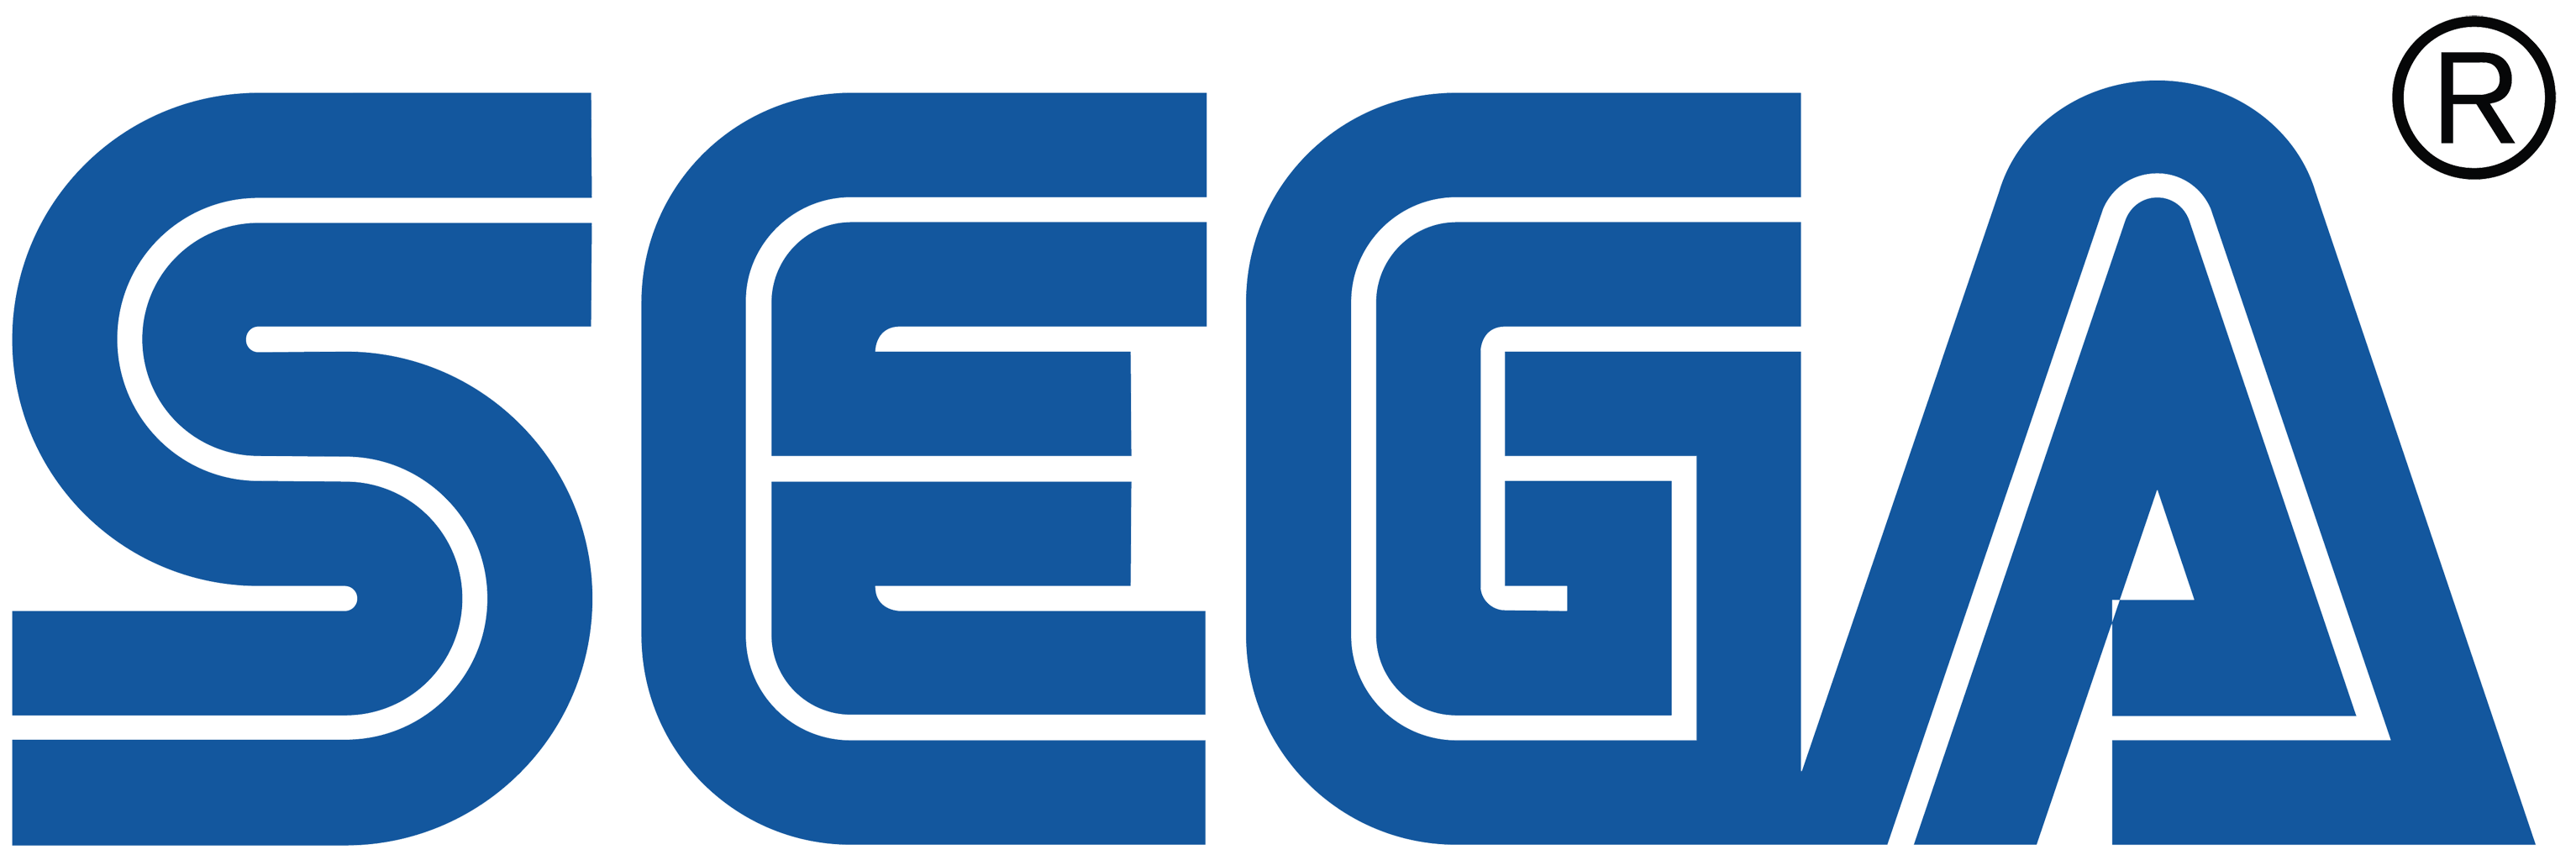 SEGA logo, logotype